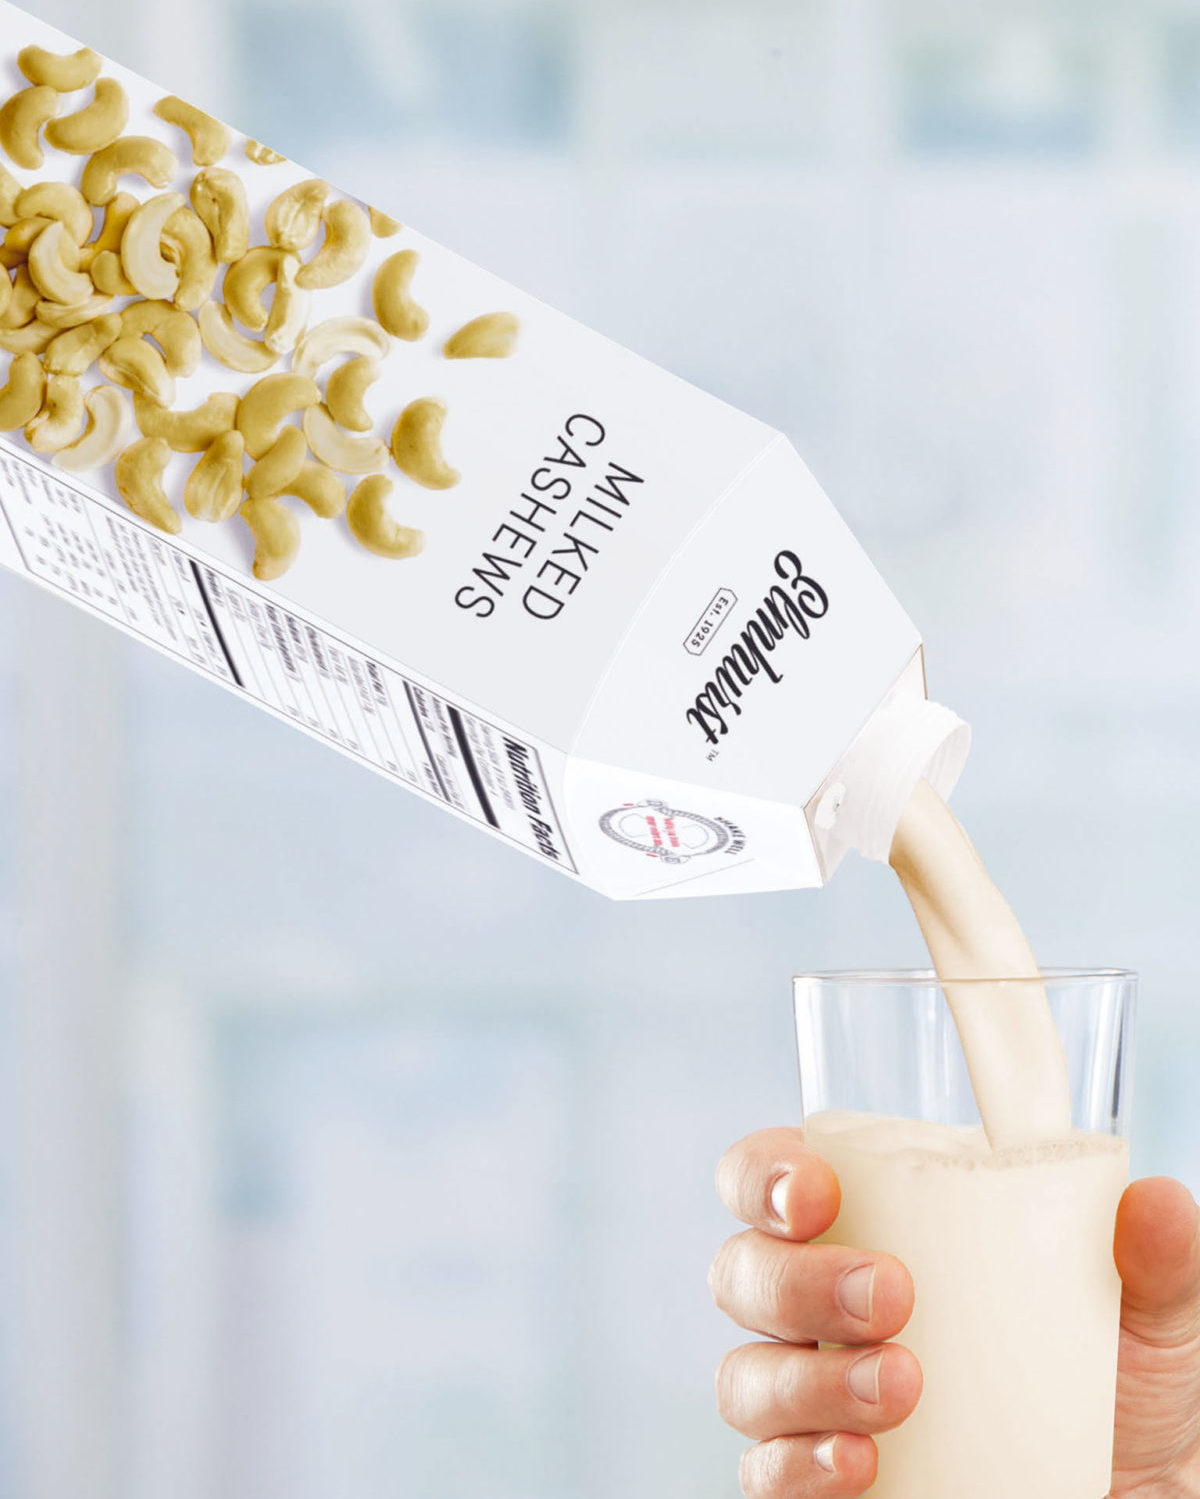 Die innovative Kartonflasche combidome von SIG Combibloc ist jetzt auch für ph-neutrale Produkte wie zum Beispiel Milch oder pflanzenbasierte Milchalternativen auf dem Markt. Foto: SIG Combibloc